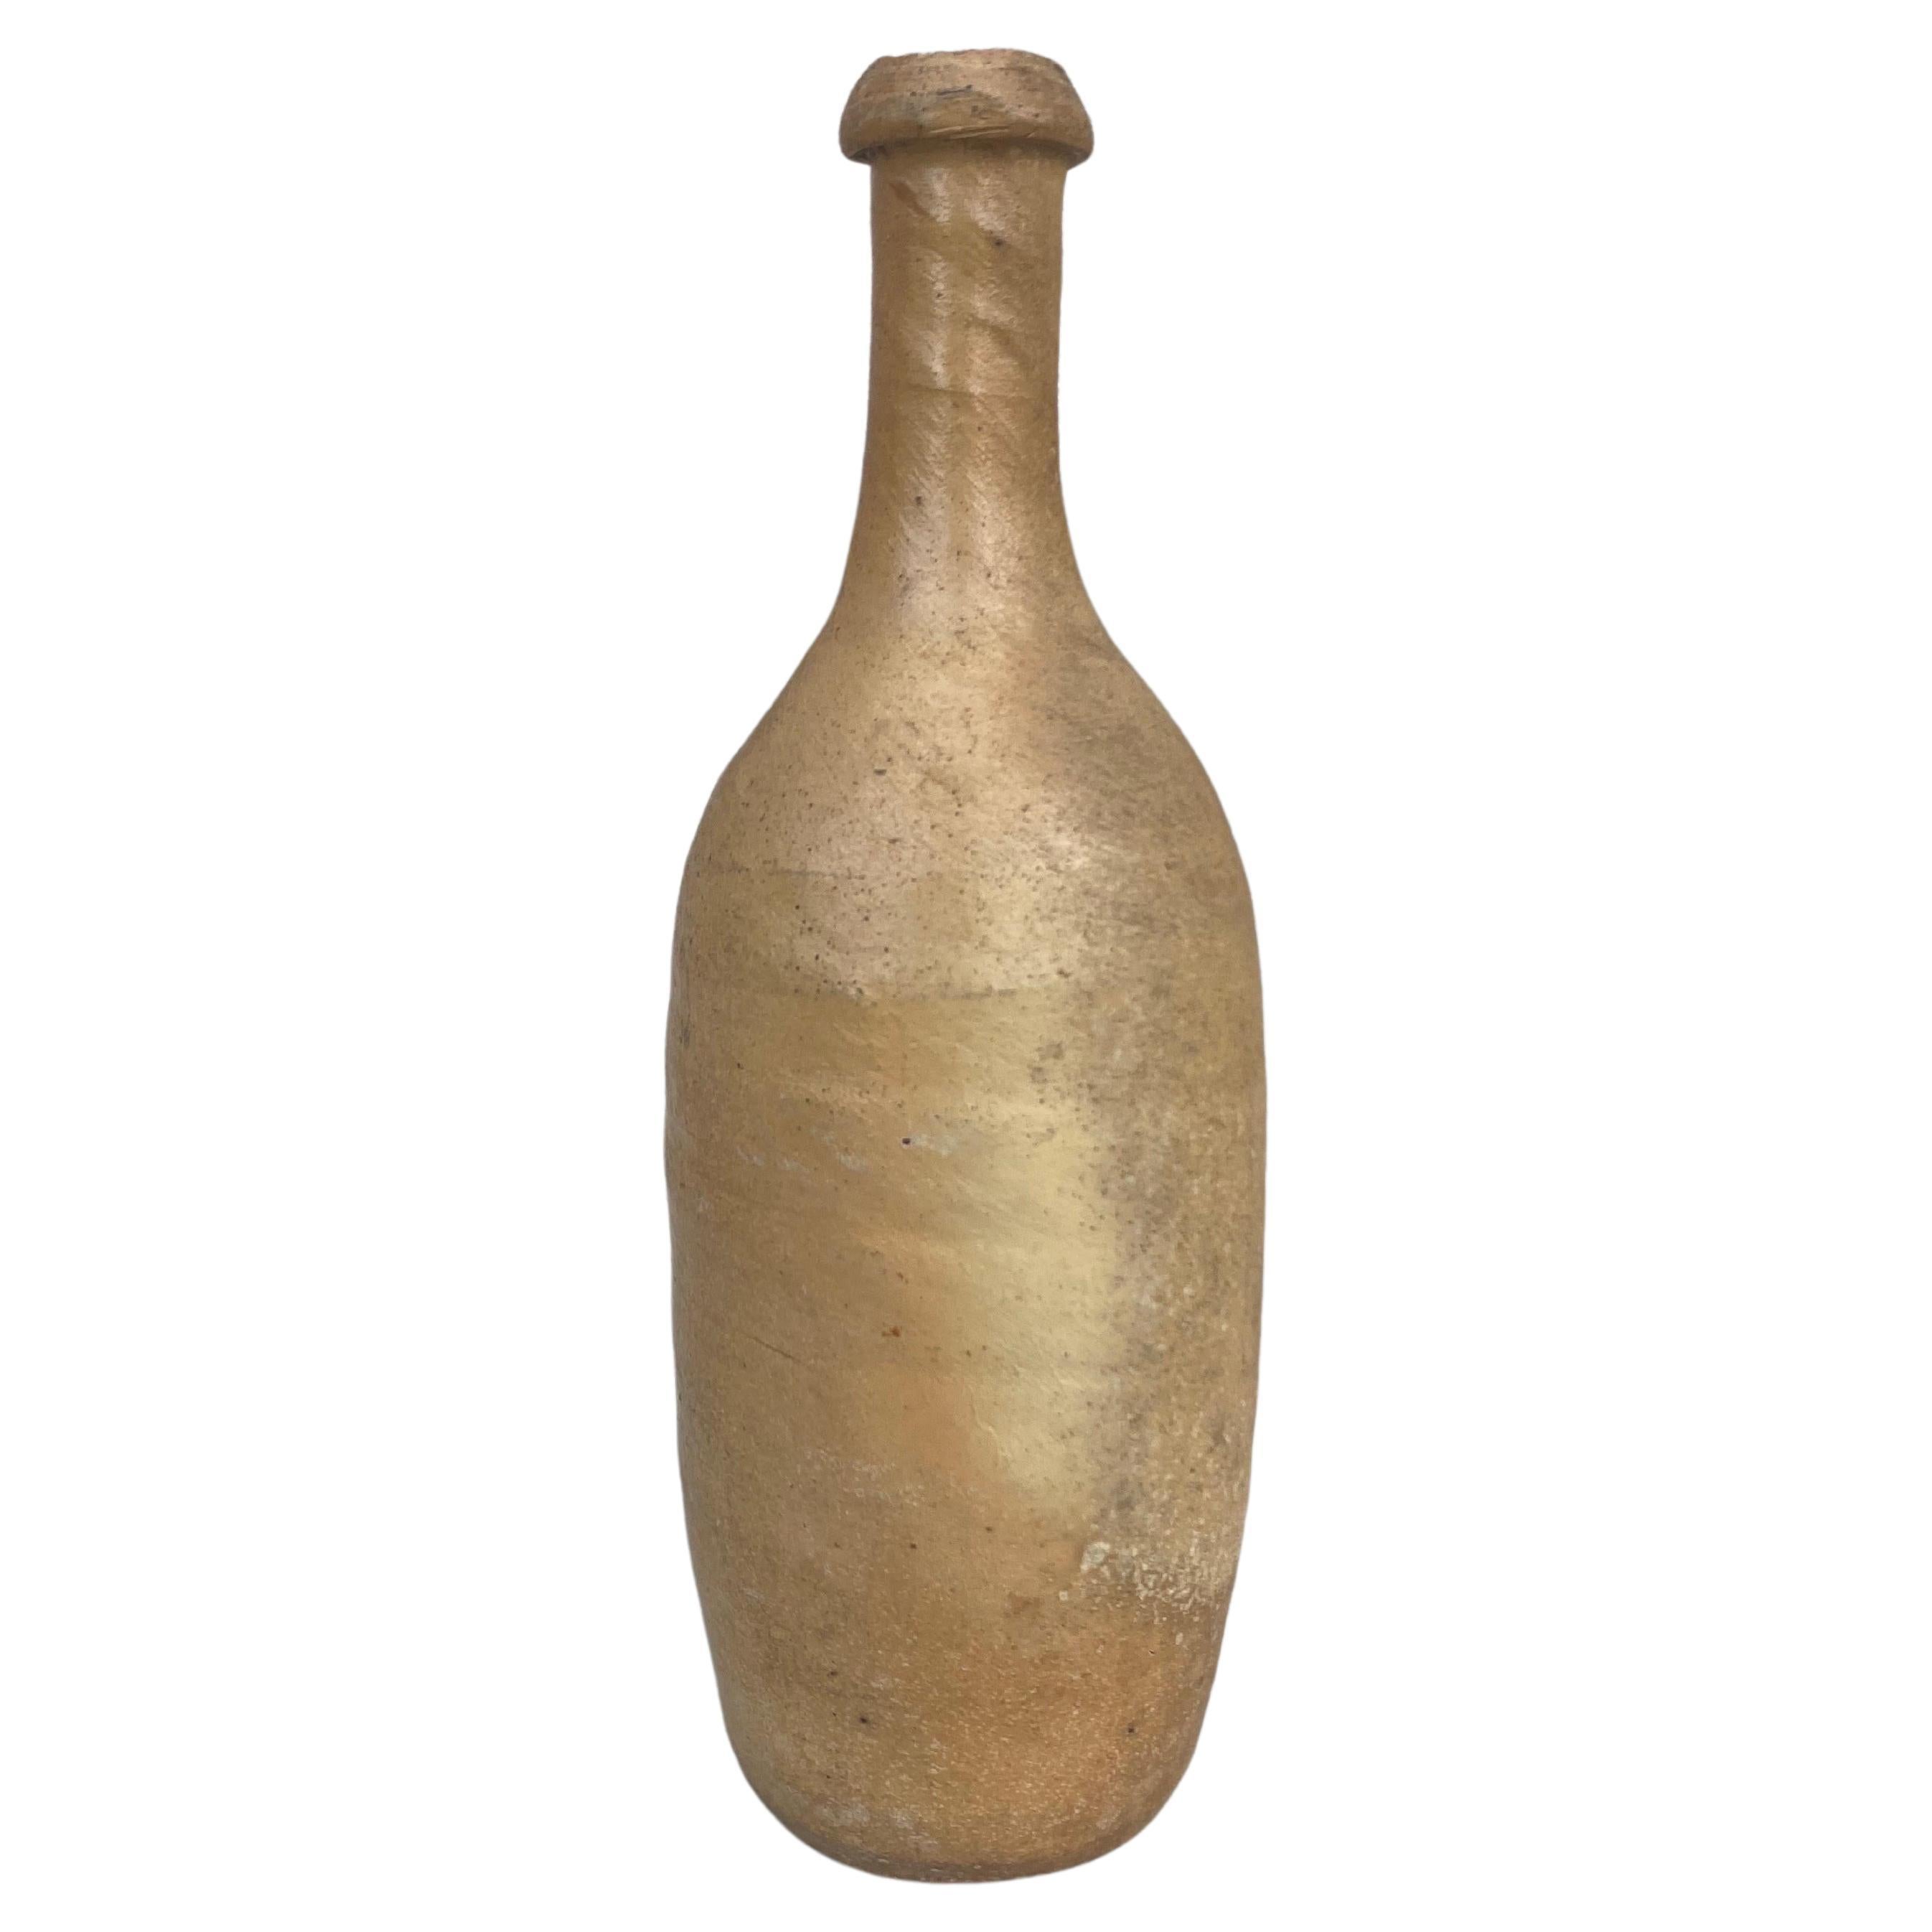 Französische Zigarettenflasche aus Keramik aus der Normandie, 19. Jahrhundert